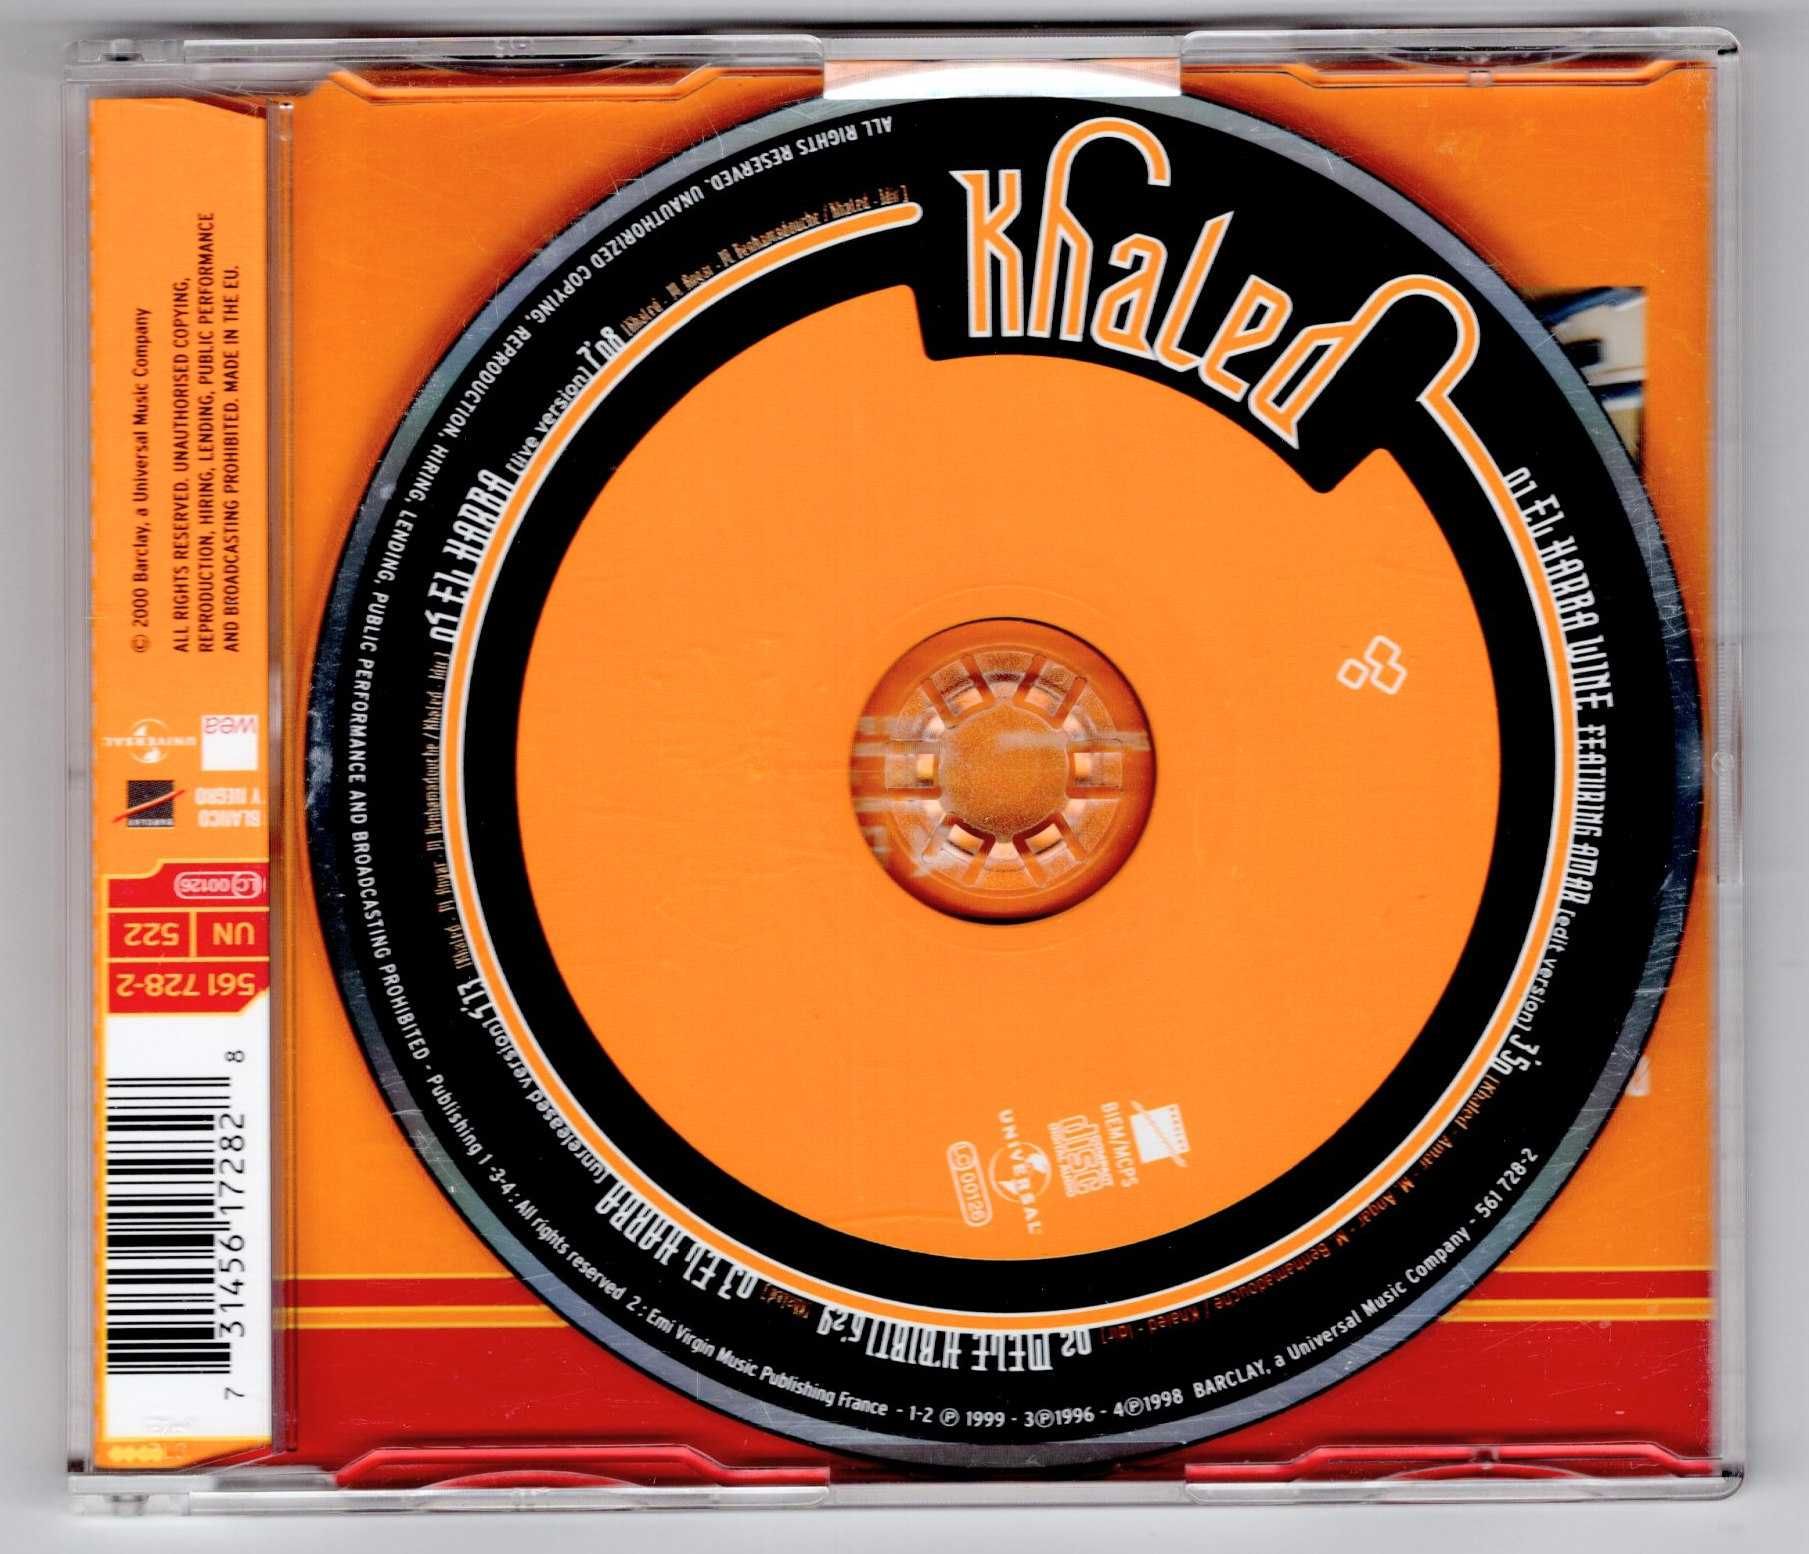 Khaled Featuring Amar - El Harba Wine (CD, Singiel)